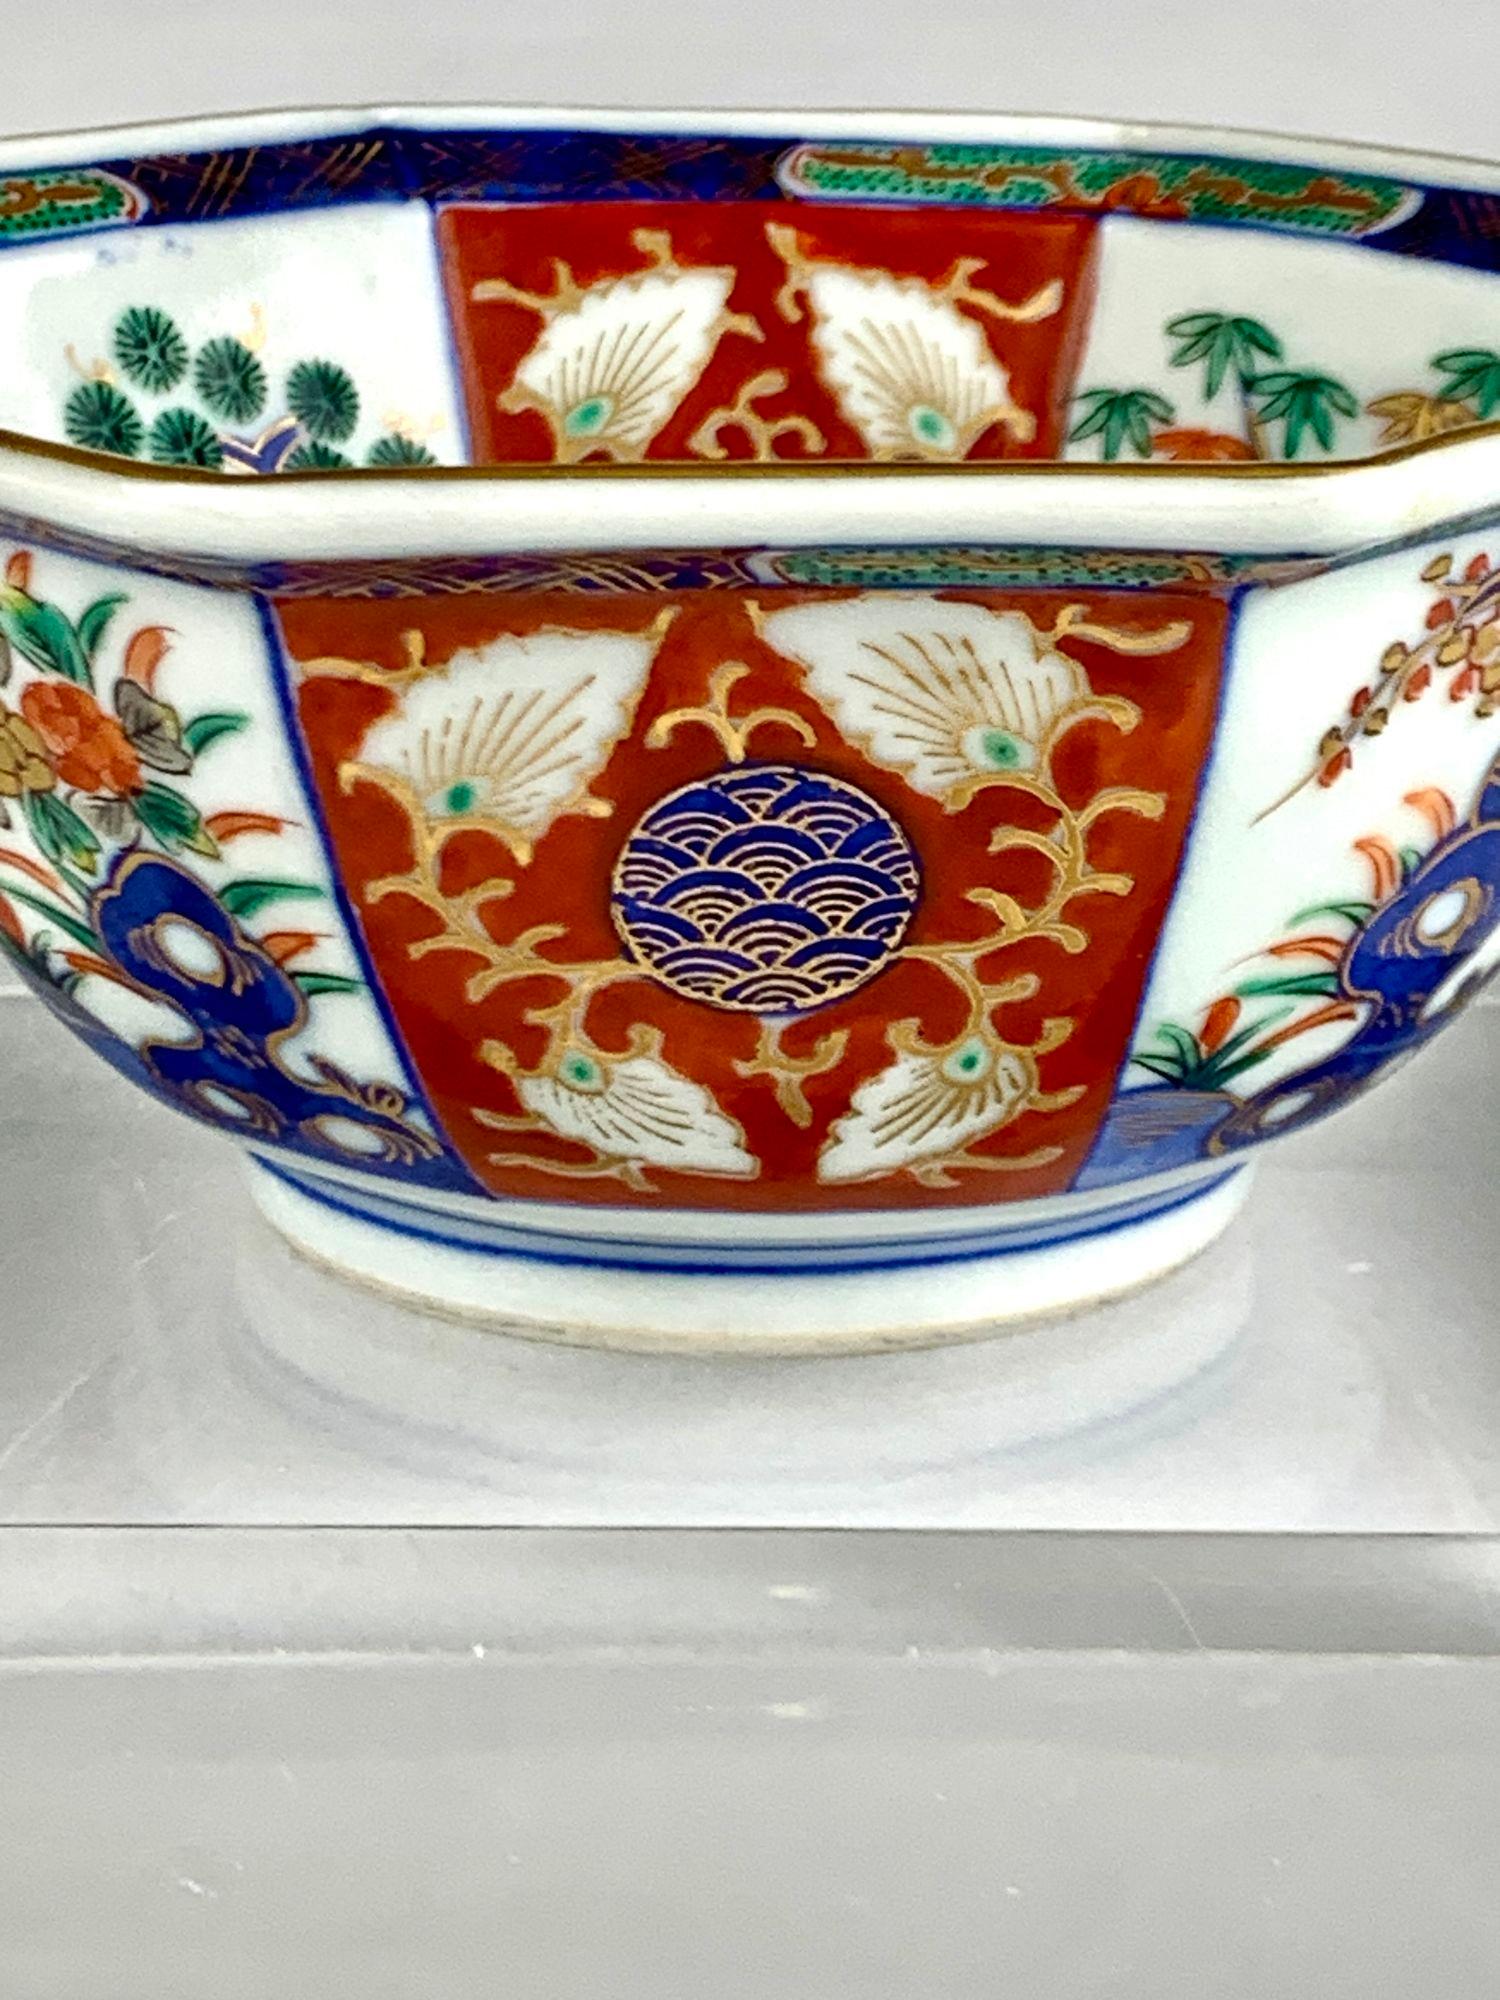 Ce délicat bol japonais a été peint à la main pendant la période Meiji, vers 1880.
La forme octogonale traditionnelle est décorée de huit panneaux dans le style Imari.
Les panneaux sont de couleur rouge fer avec un motif de vagues or et bleu au